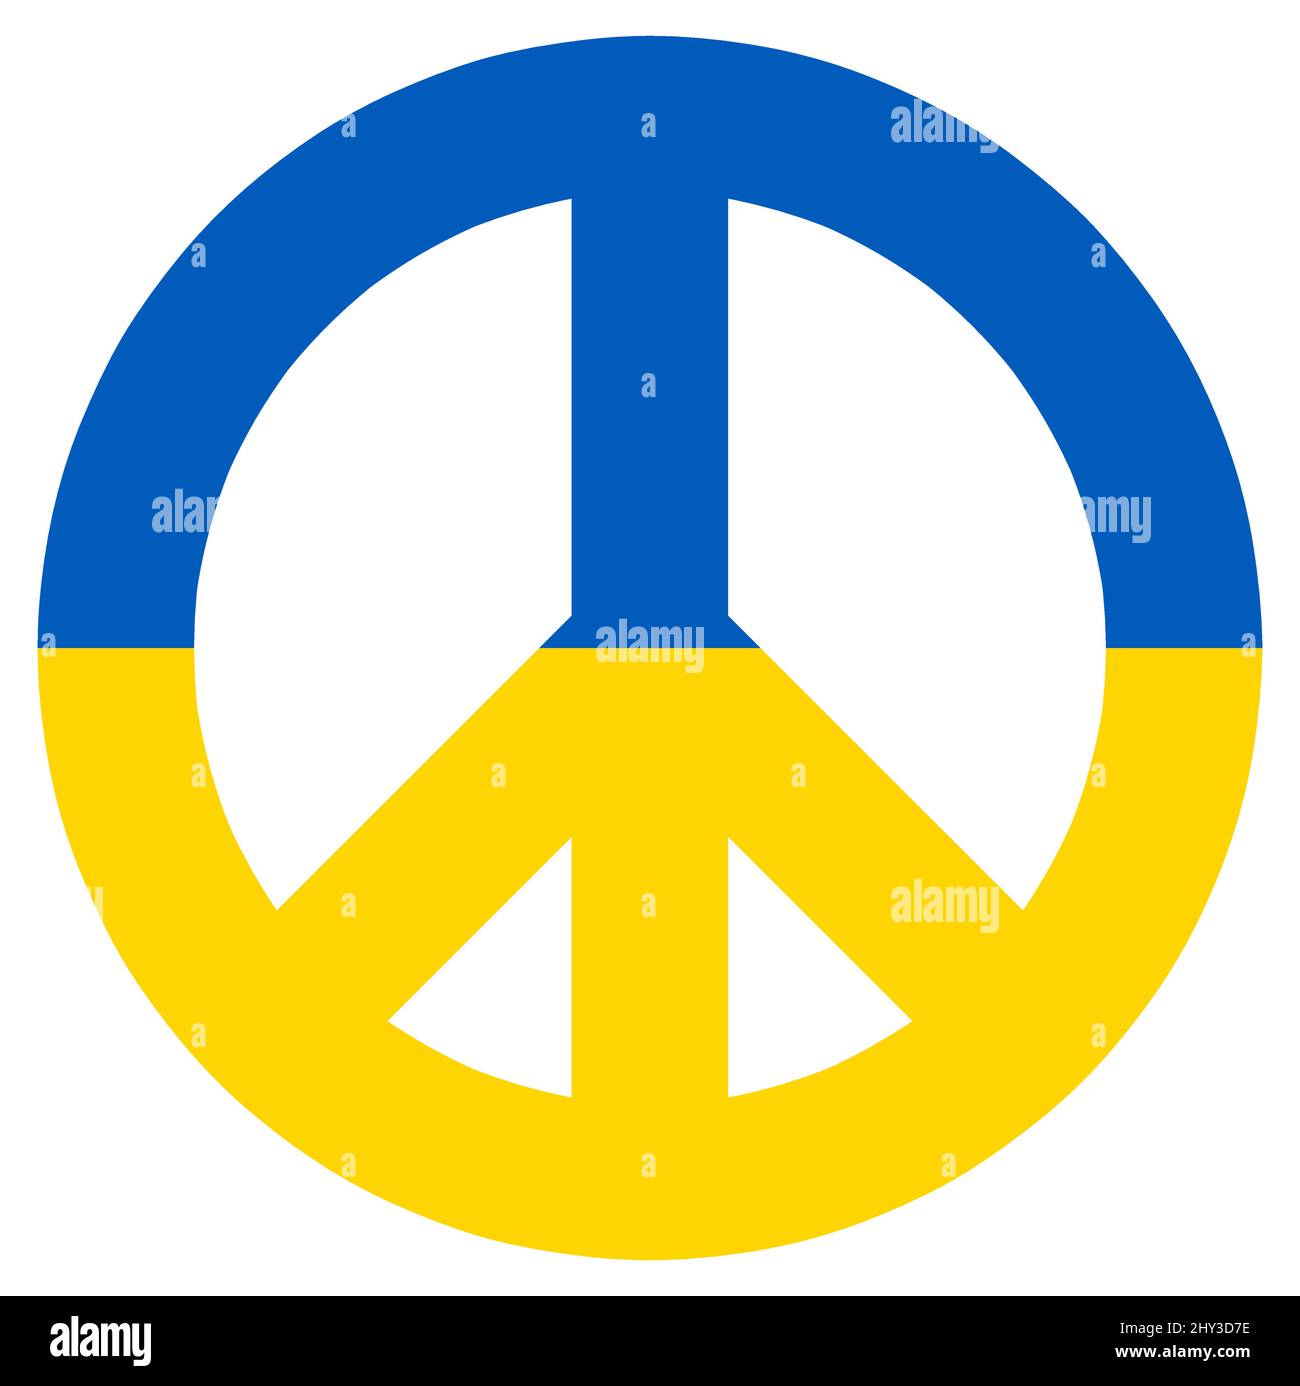 eps-Vektor-Illustration mit Friedenszeichen farbig mit Länderfarben der ukraine für den Konflikt mit russland 2022 Stock Vektor